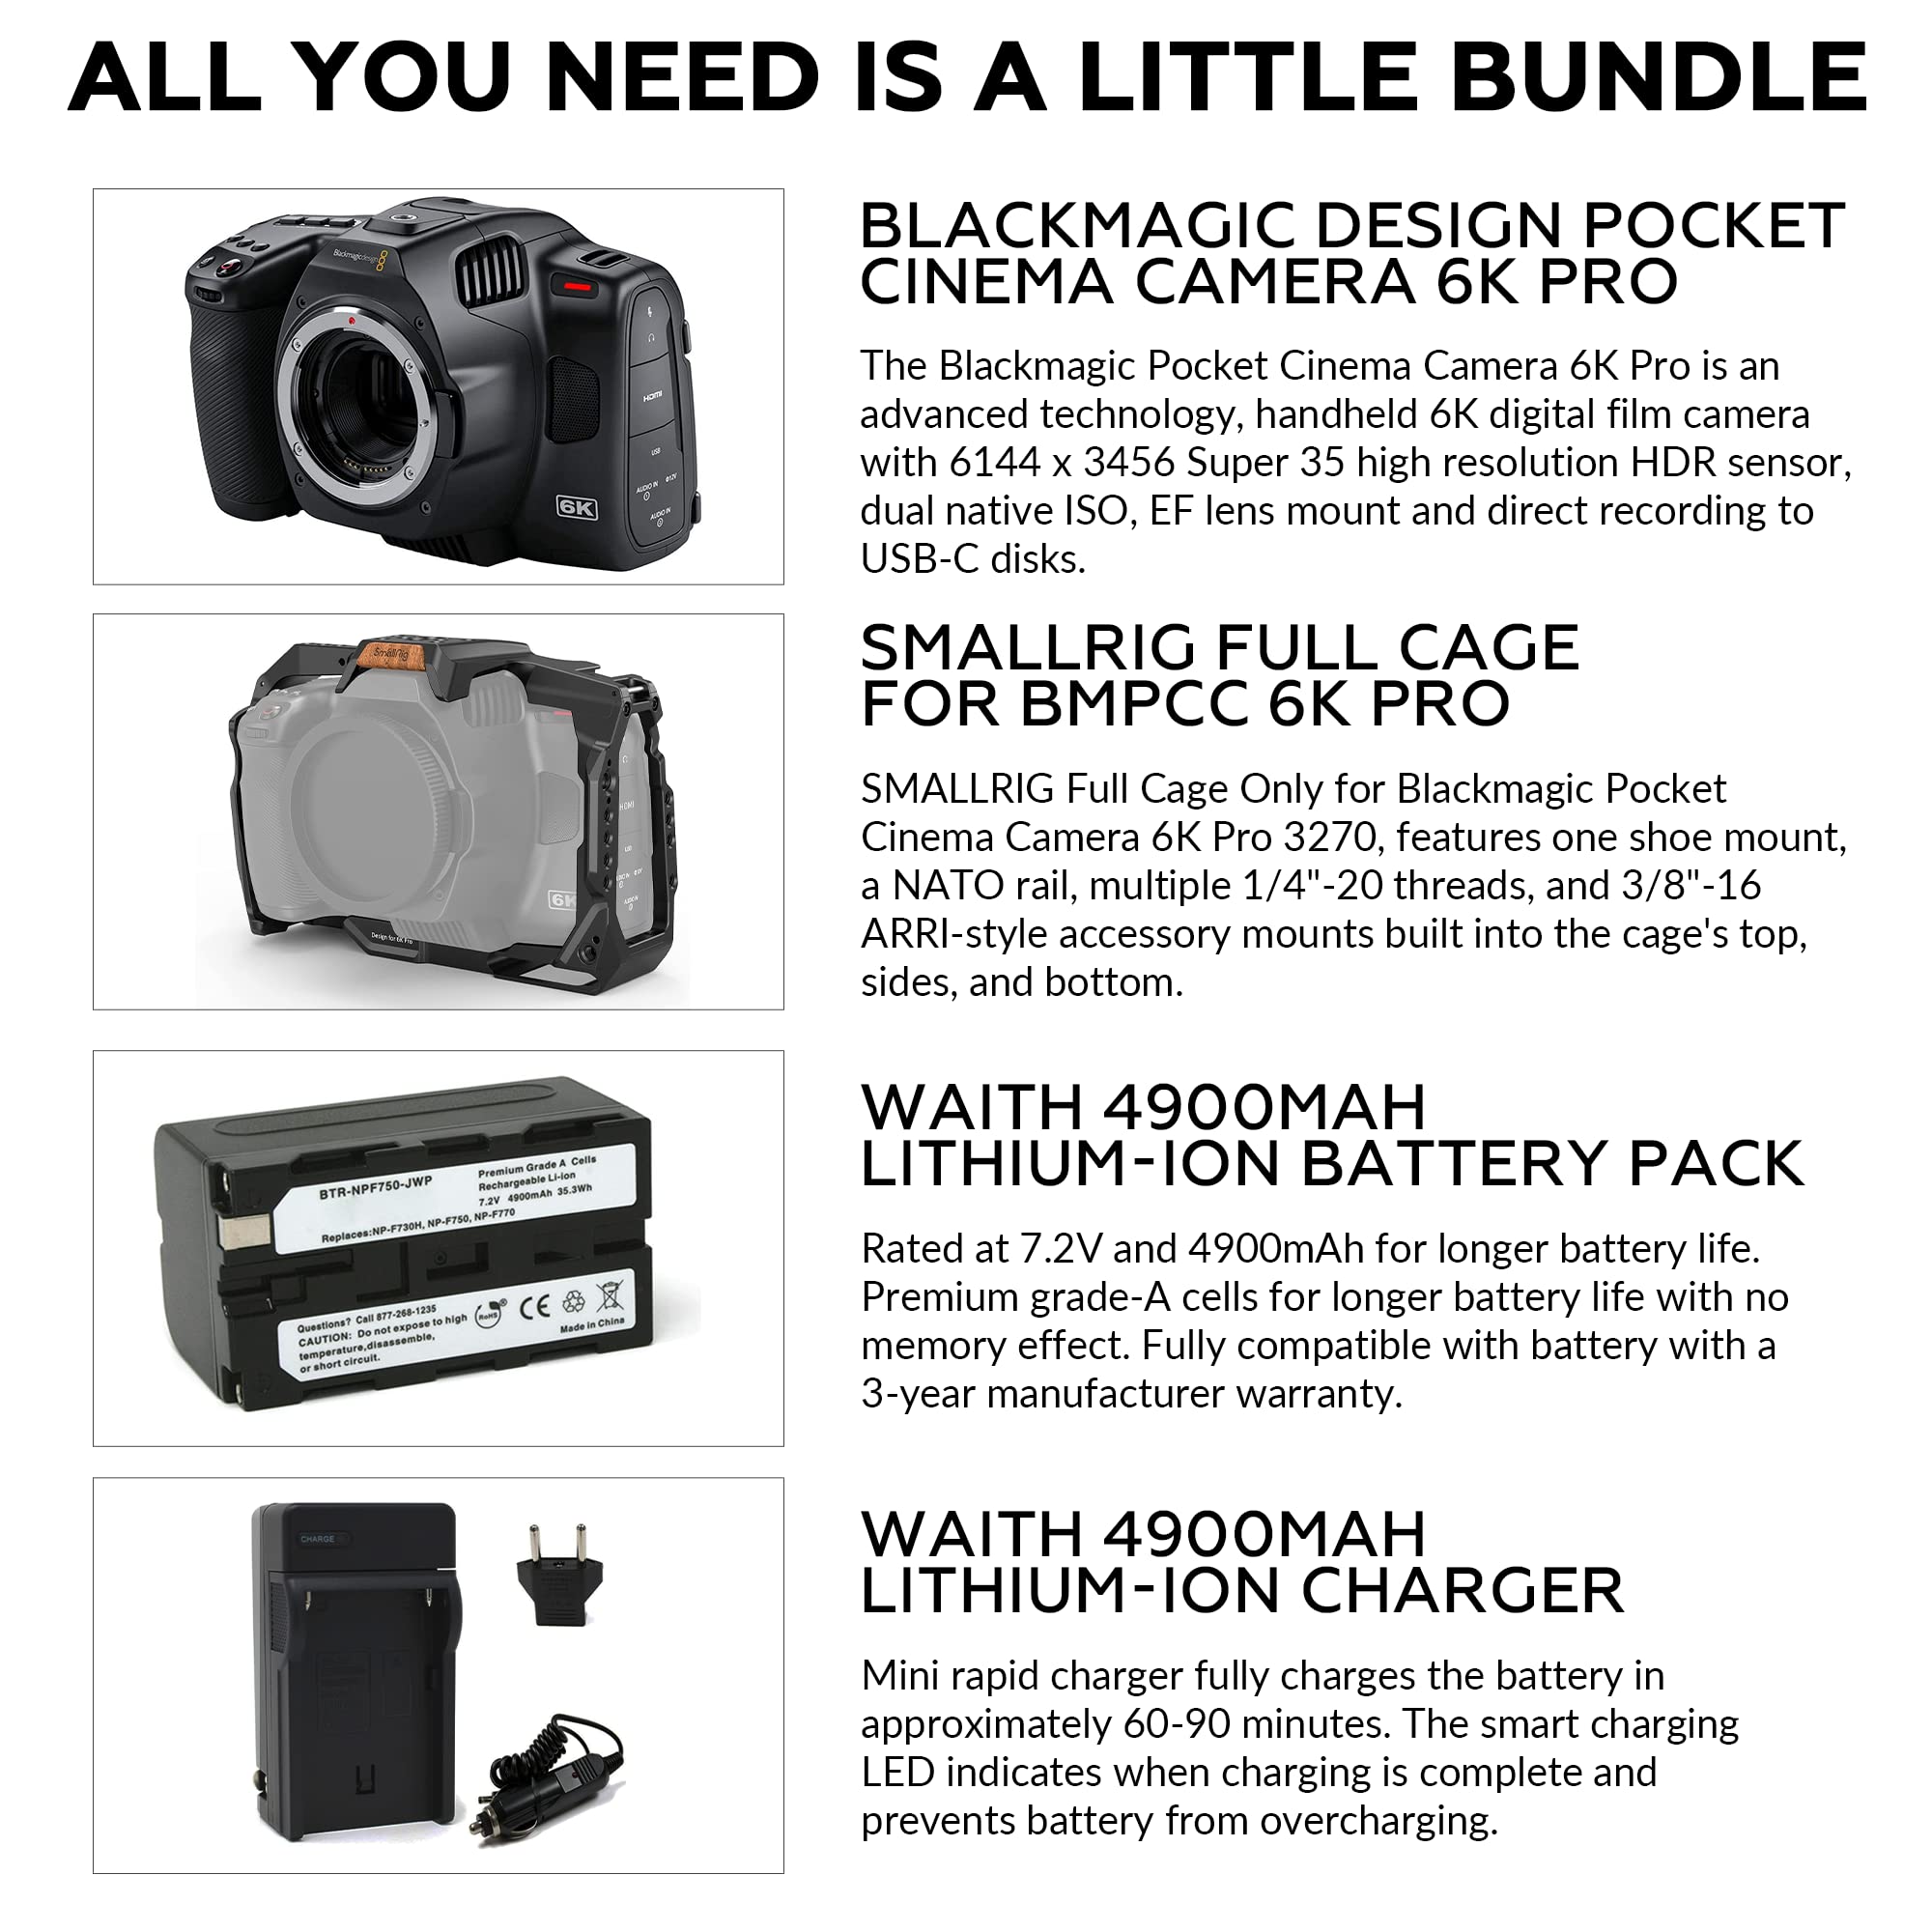 Blackmagic 6K Pro Pocket Design Cinema Camera for Canon EF | 13-Stop Dynamic Range, Super35 HDR Sensor, Gen 5 Color Science, SmallRig Full Cage, Waith Battery, and Charger Bundle Set